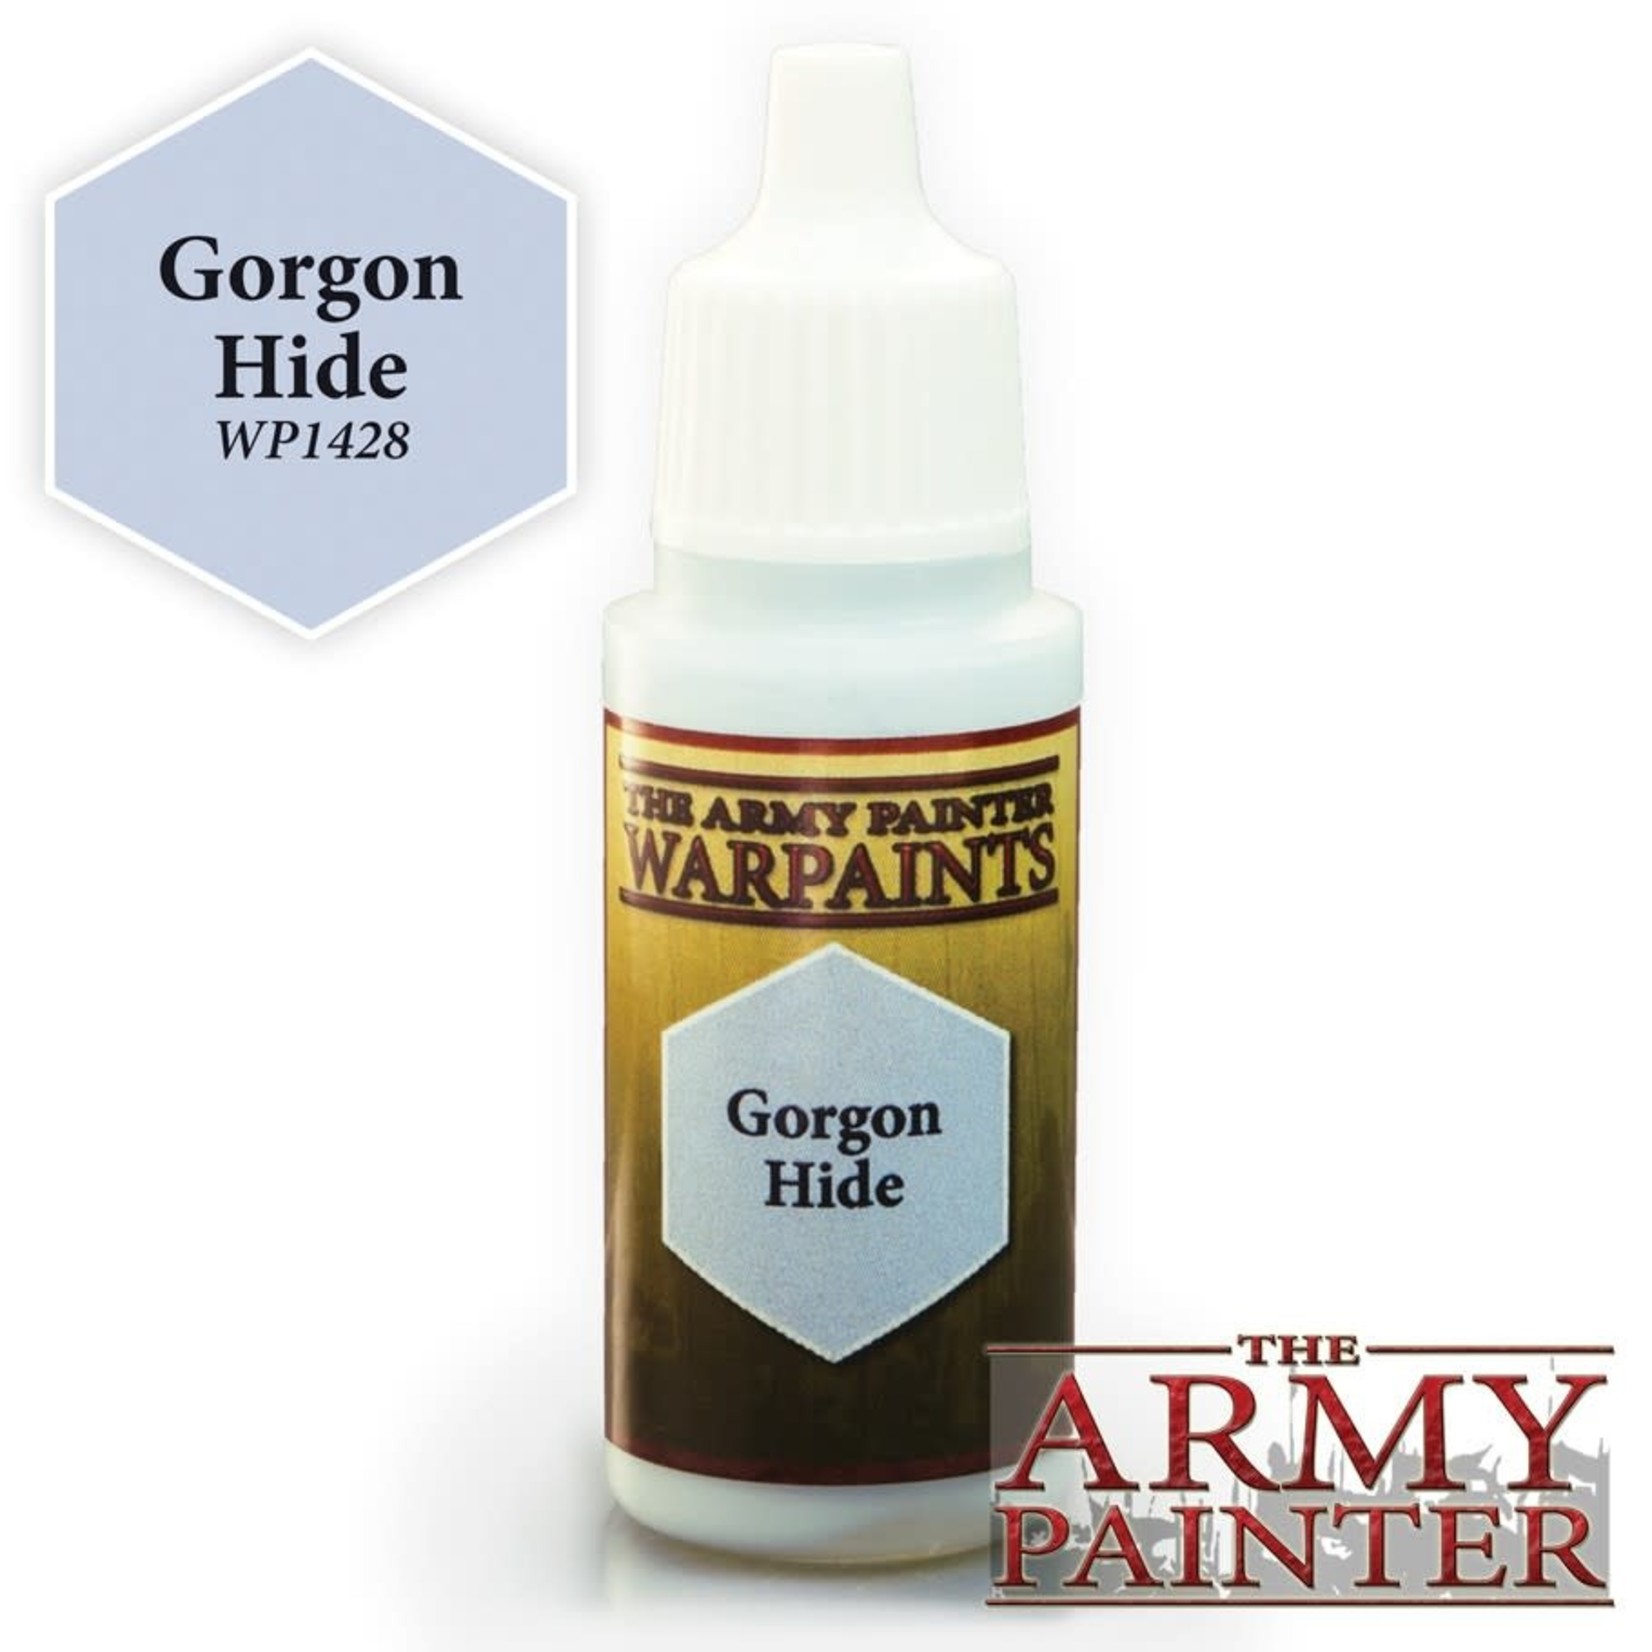 The Army Painter Warpaints: Gorgon Hide